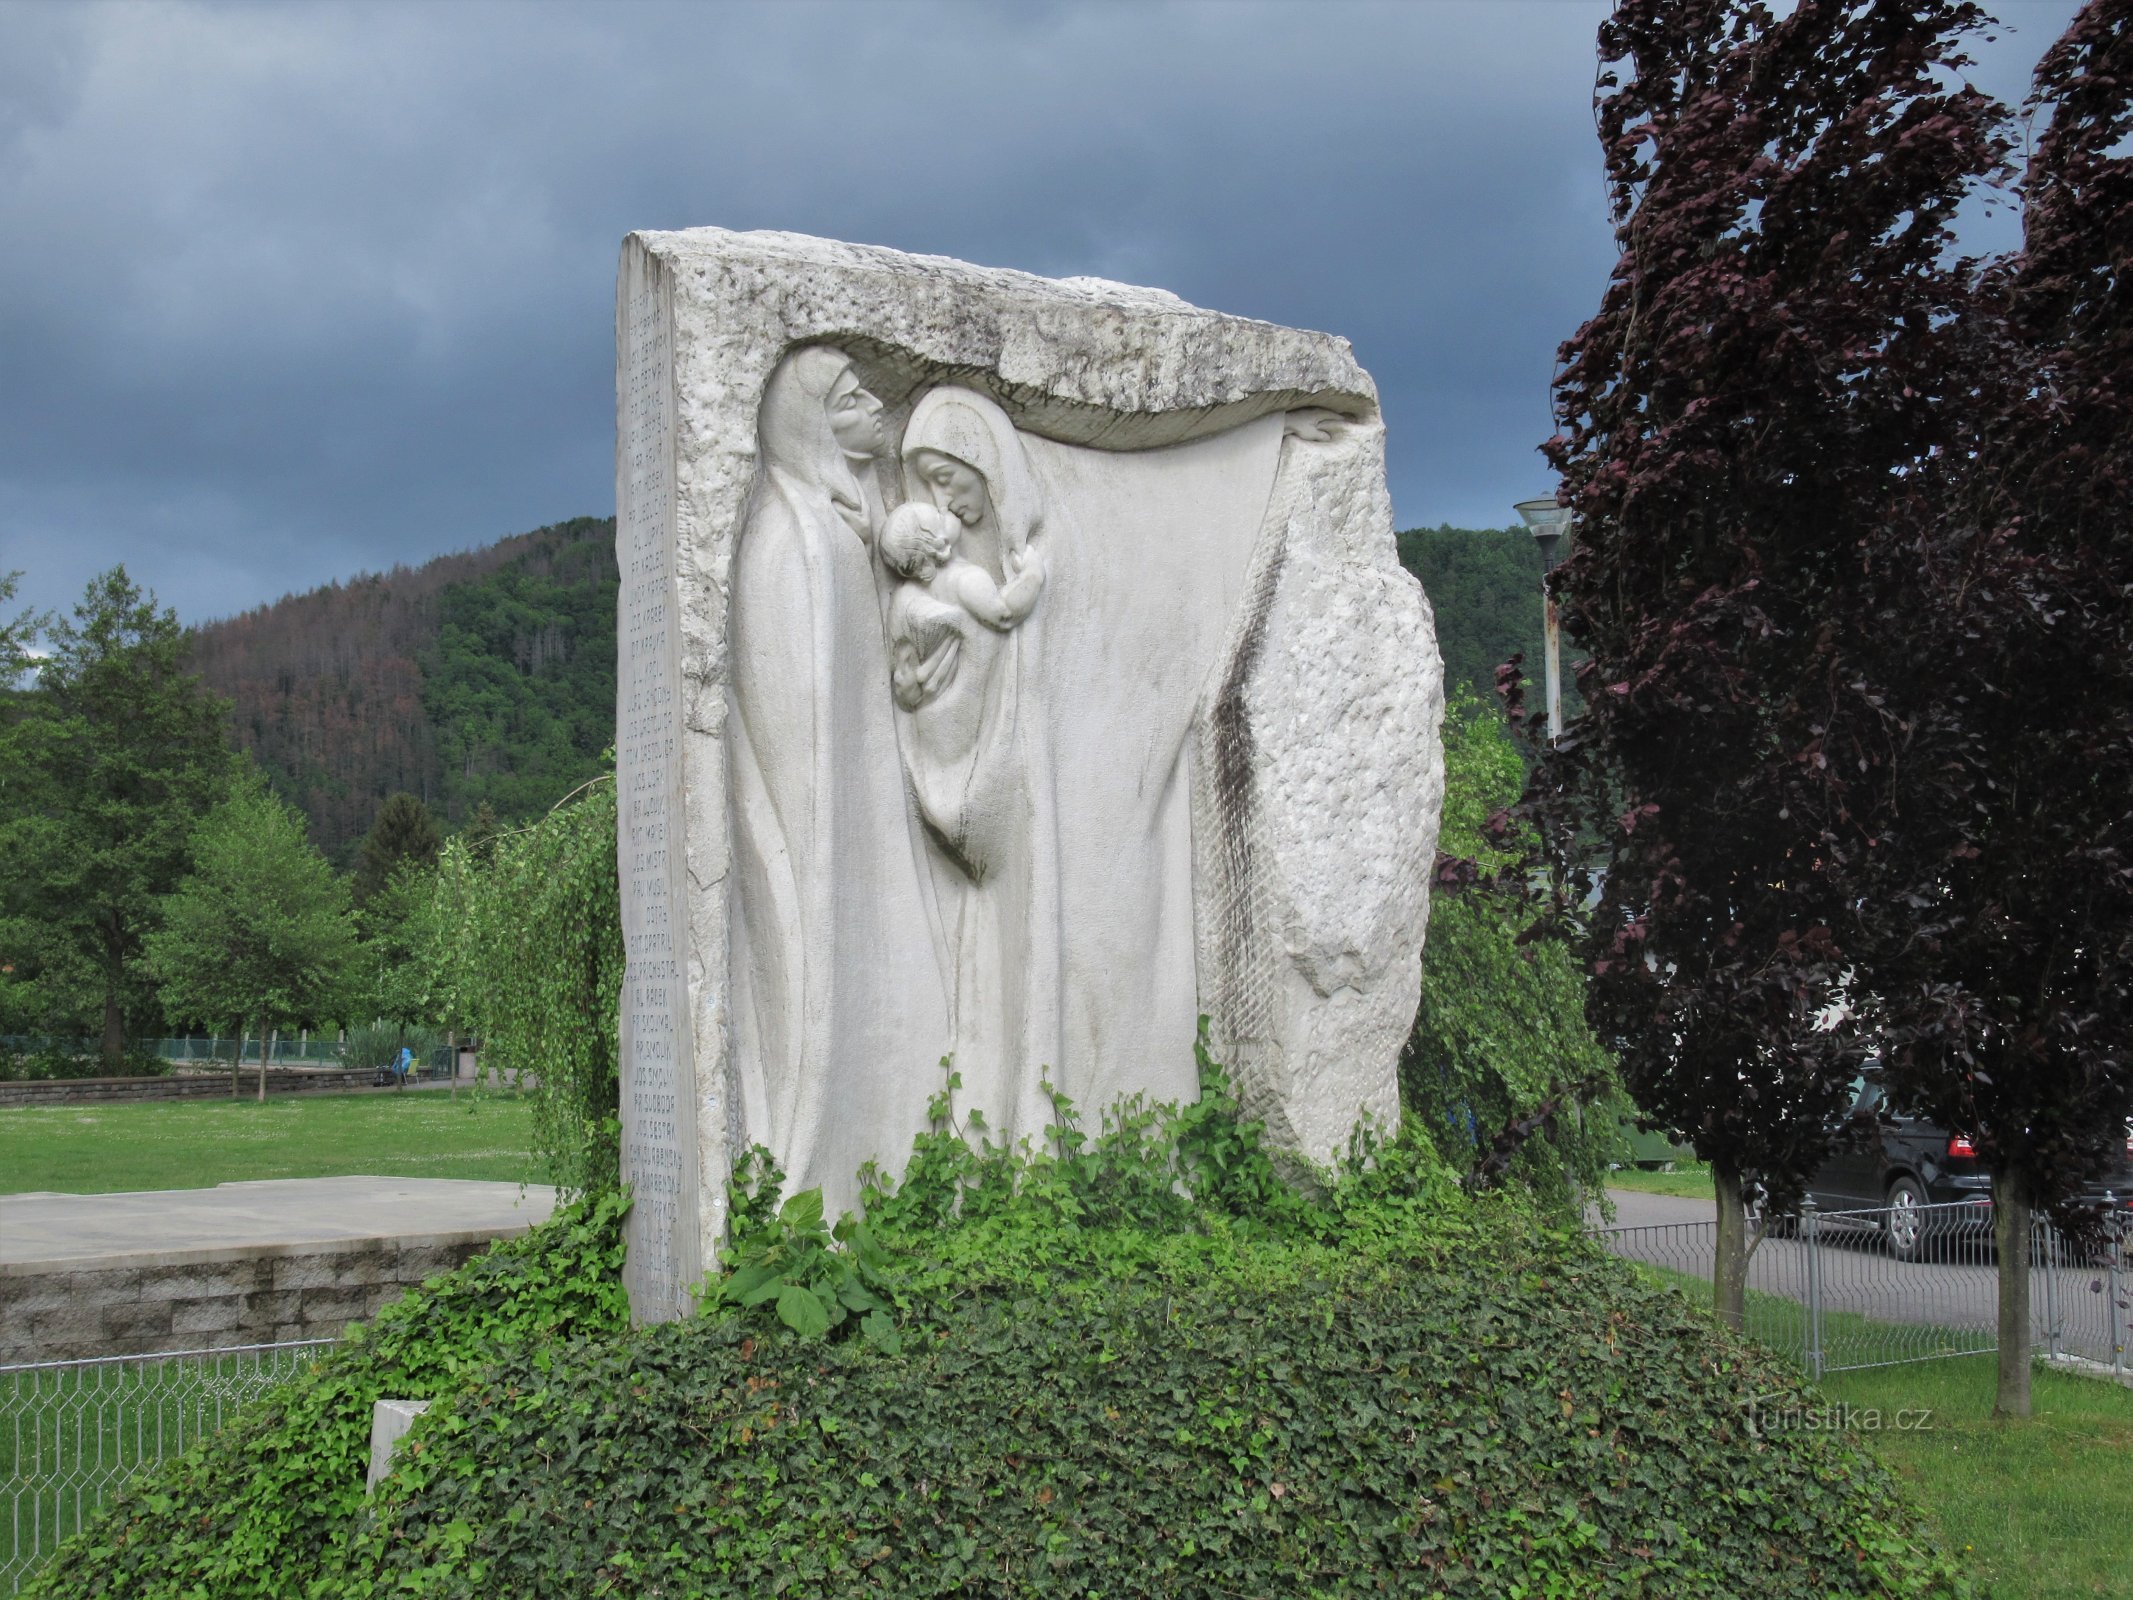 Nedvědice - Đài tưởng niệm các nạn nhân của Thế chiến thứ nhất